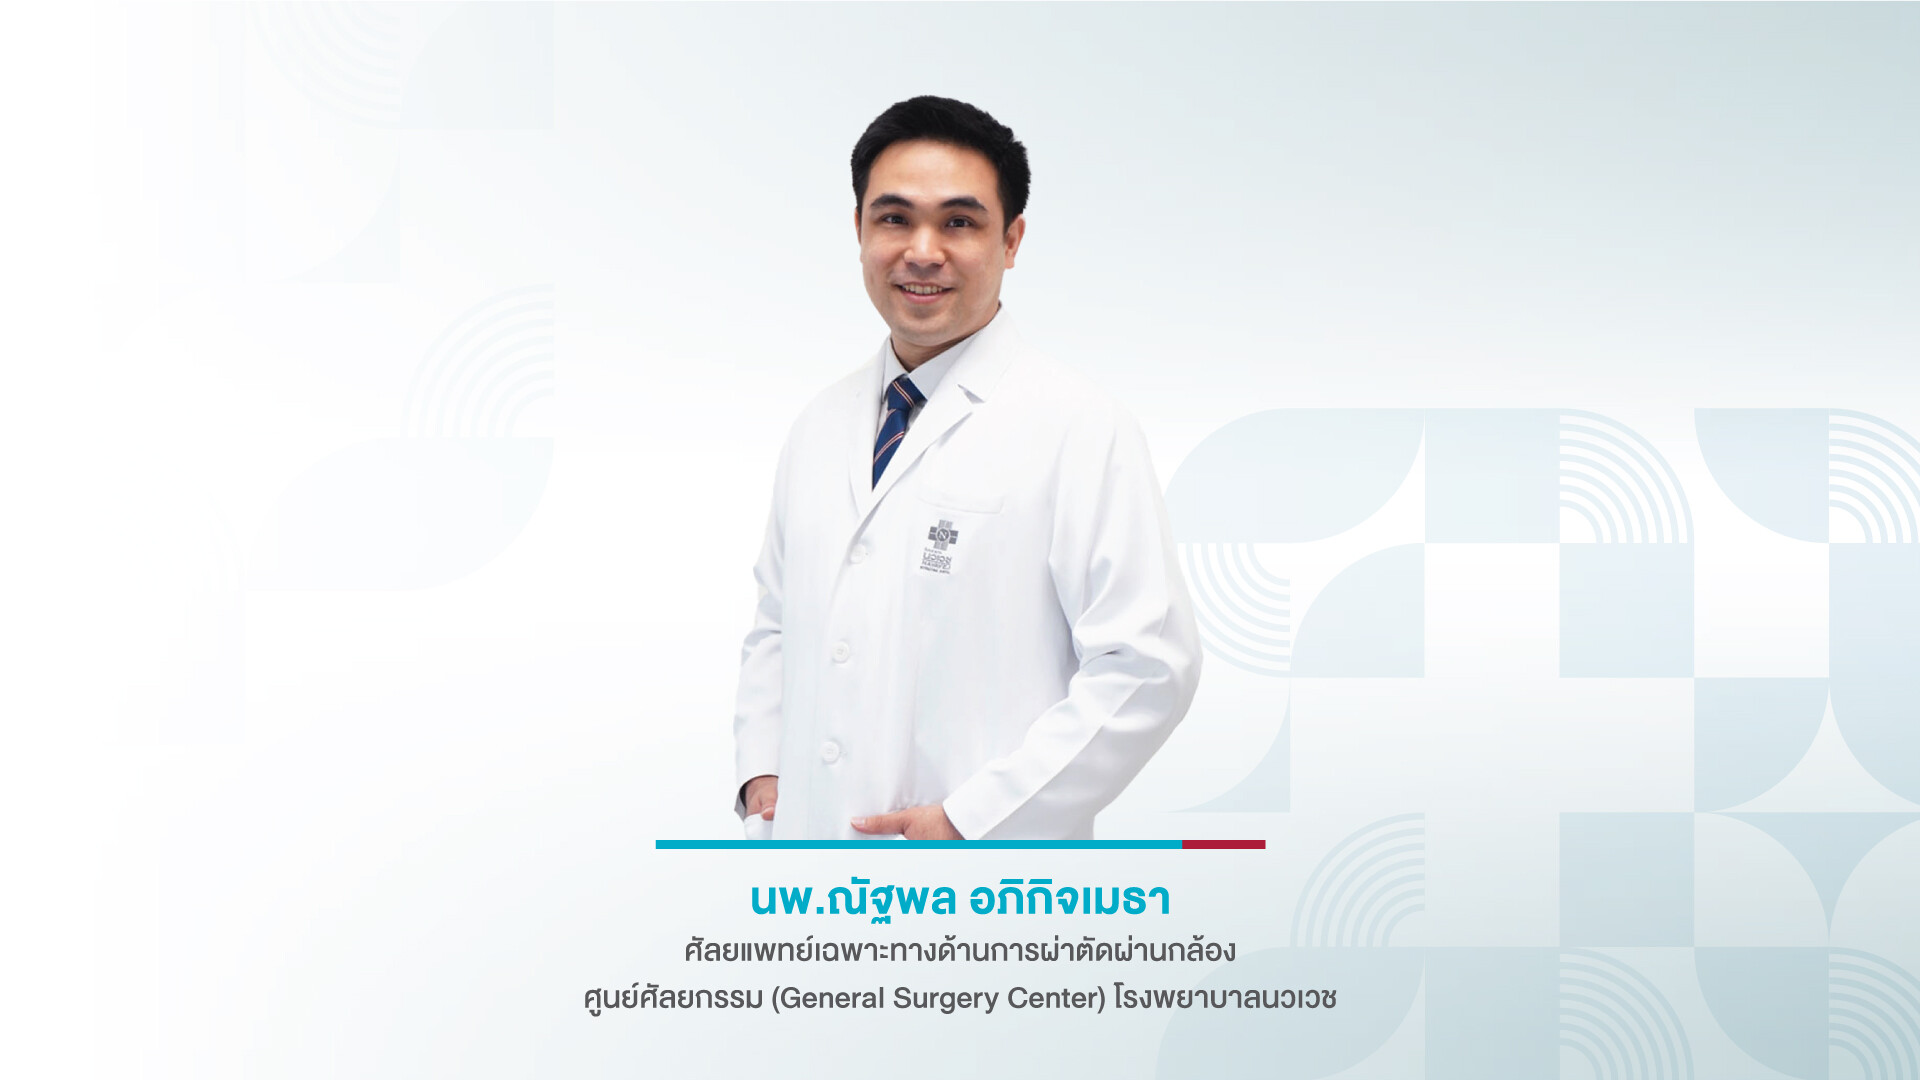 ส่องกล้องผ่าตัดกระเพาะอาหาร ลดน้ำหนัก รักษาโรคอ้วน (Bariatric Surgery)